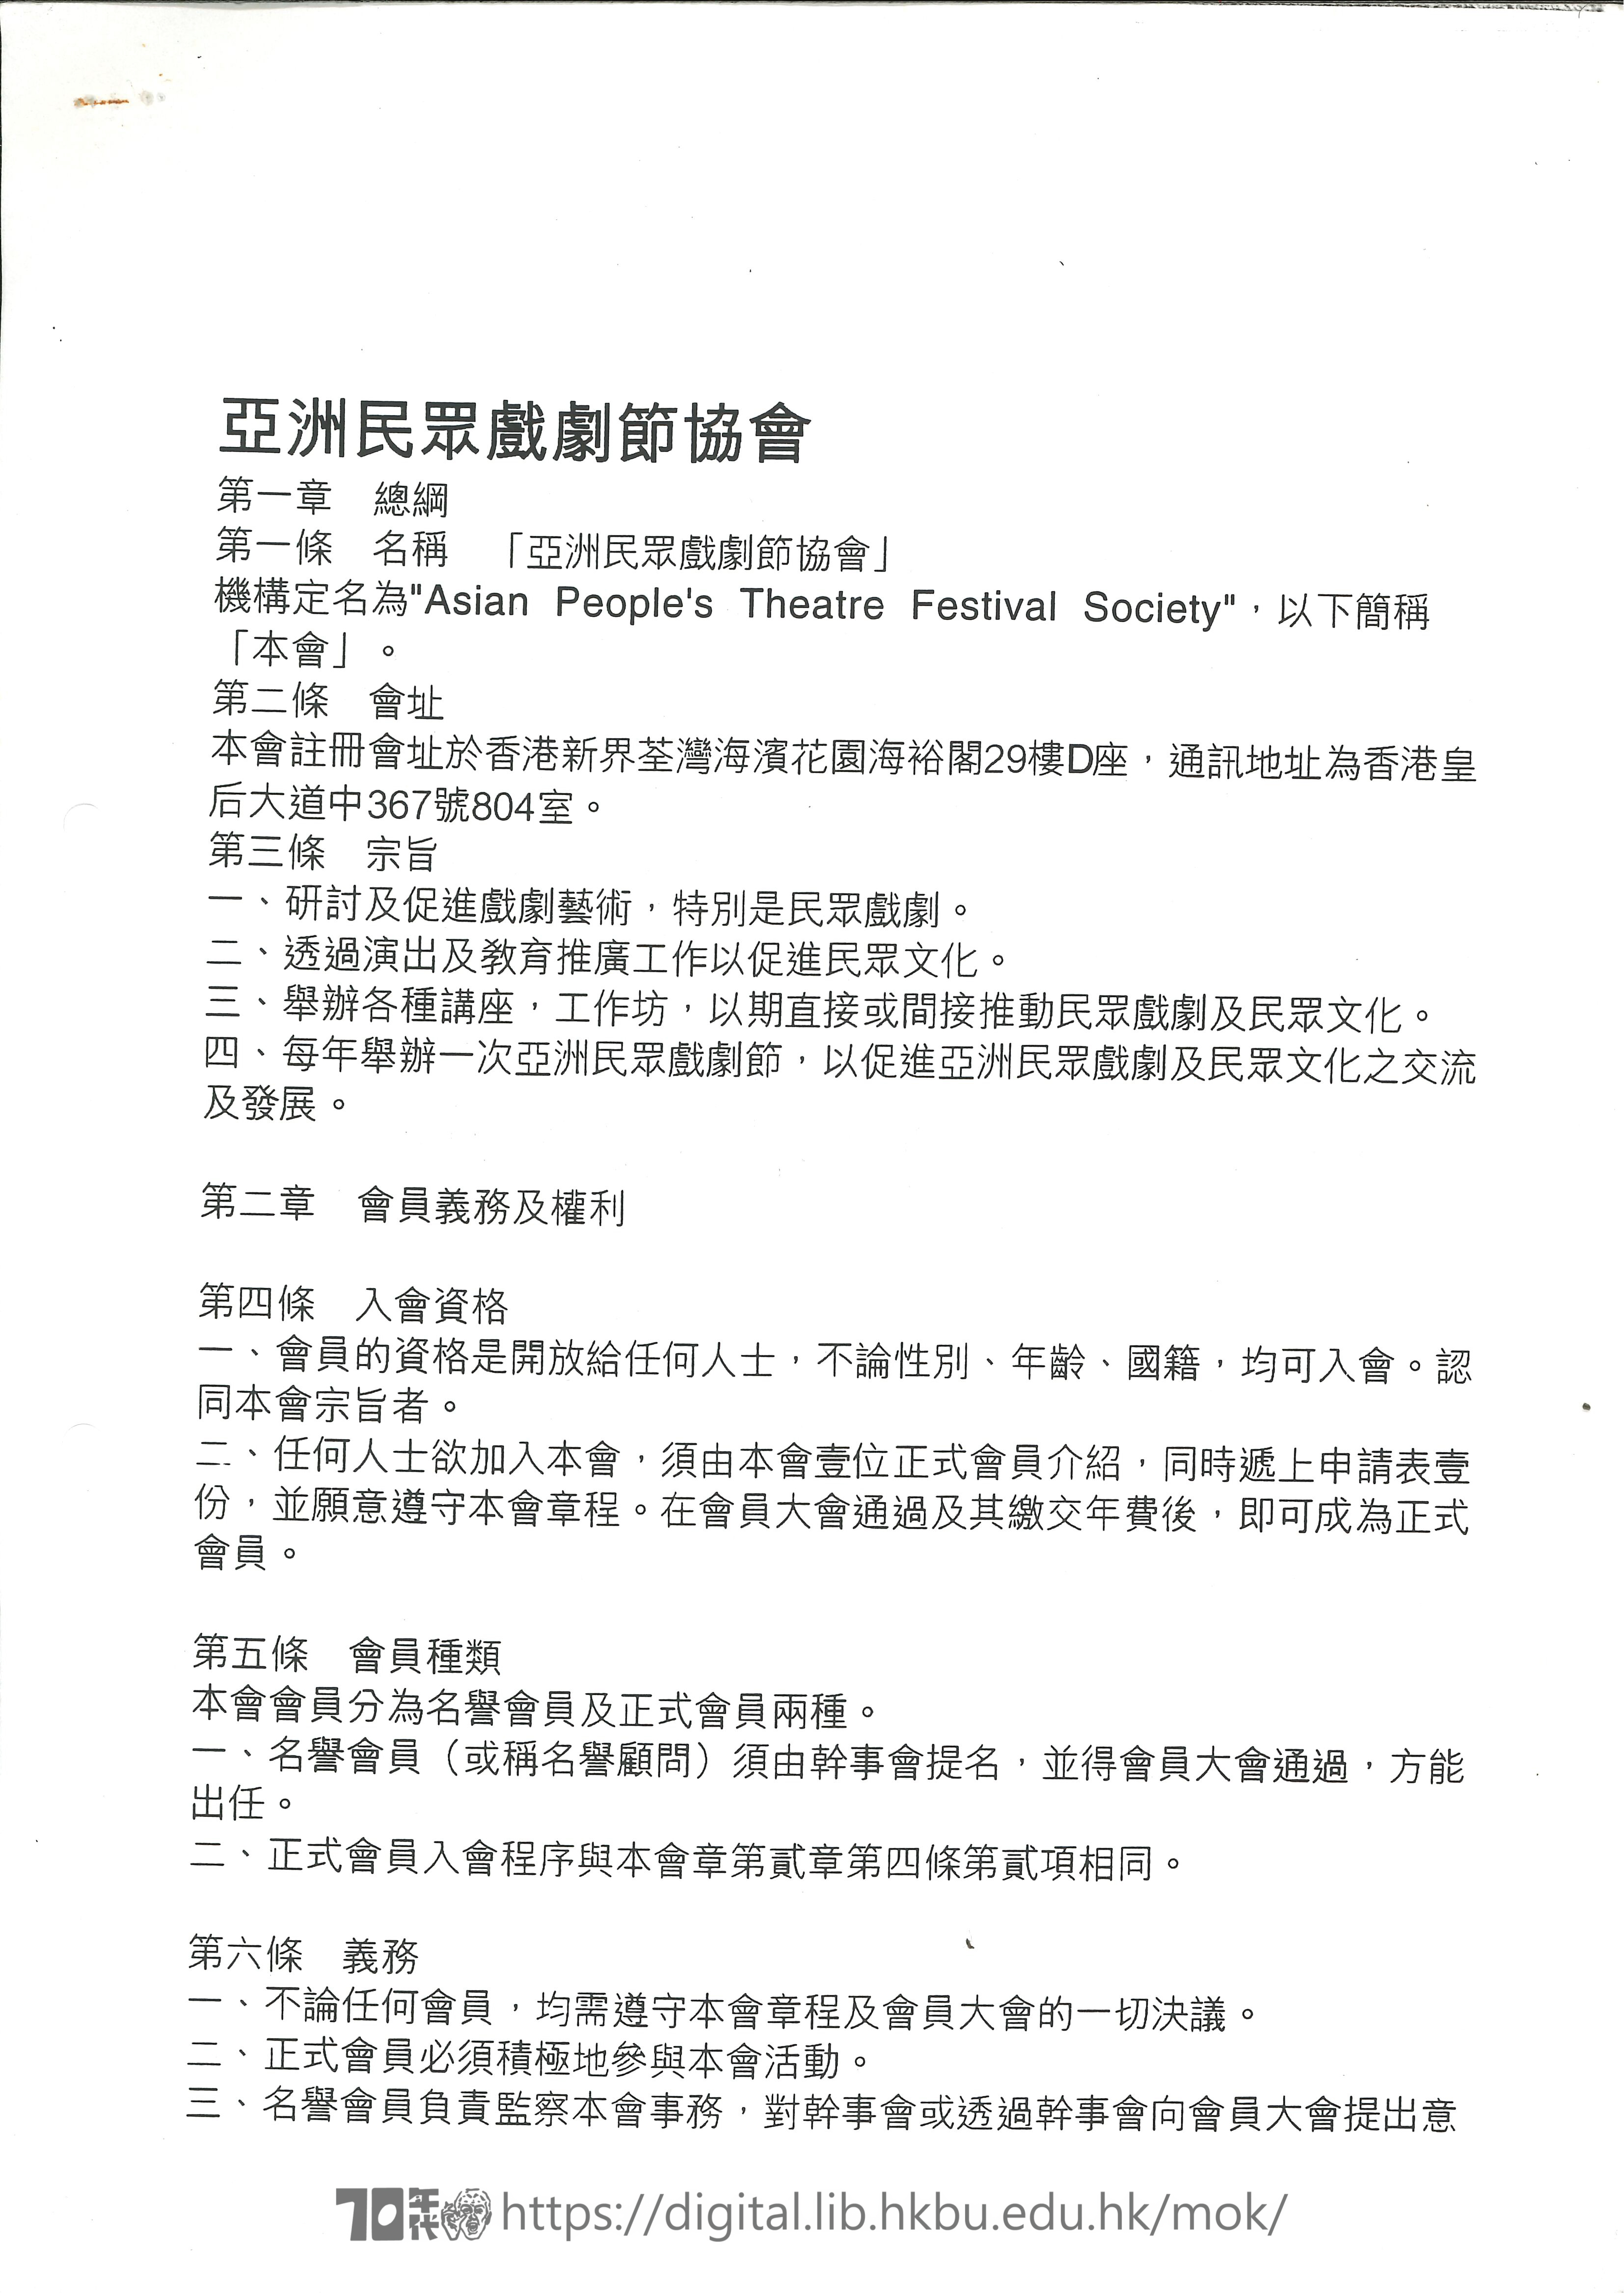   亞洲民衆戲劇節協會章程  